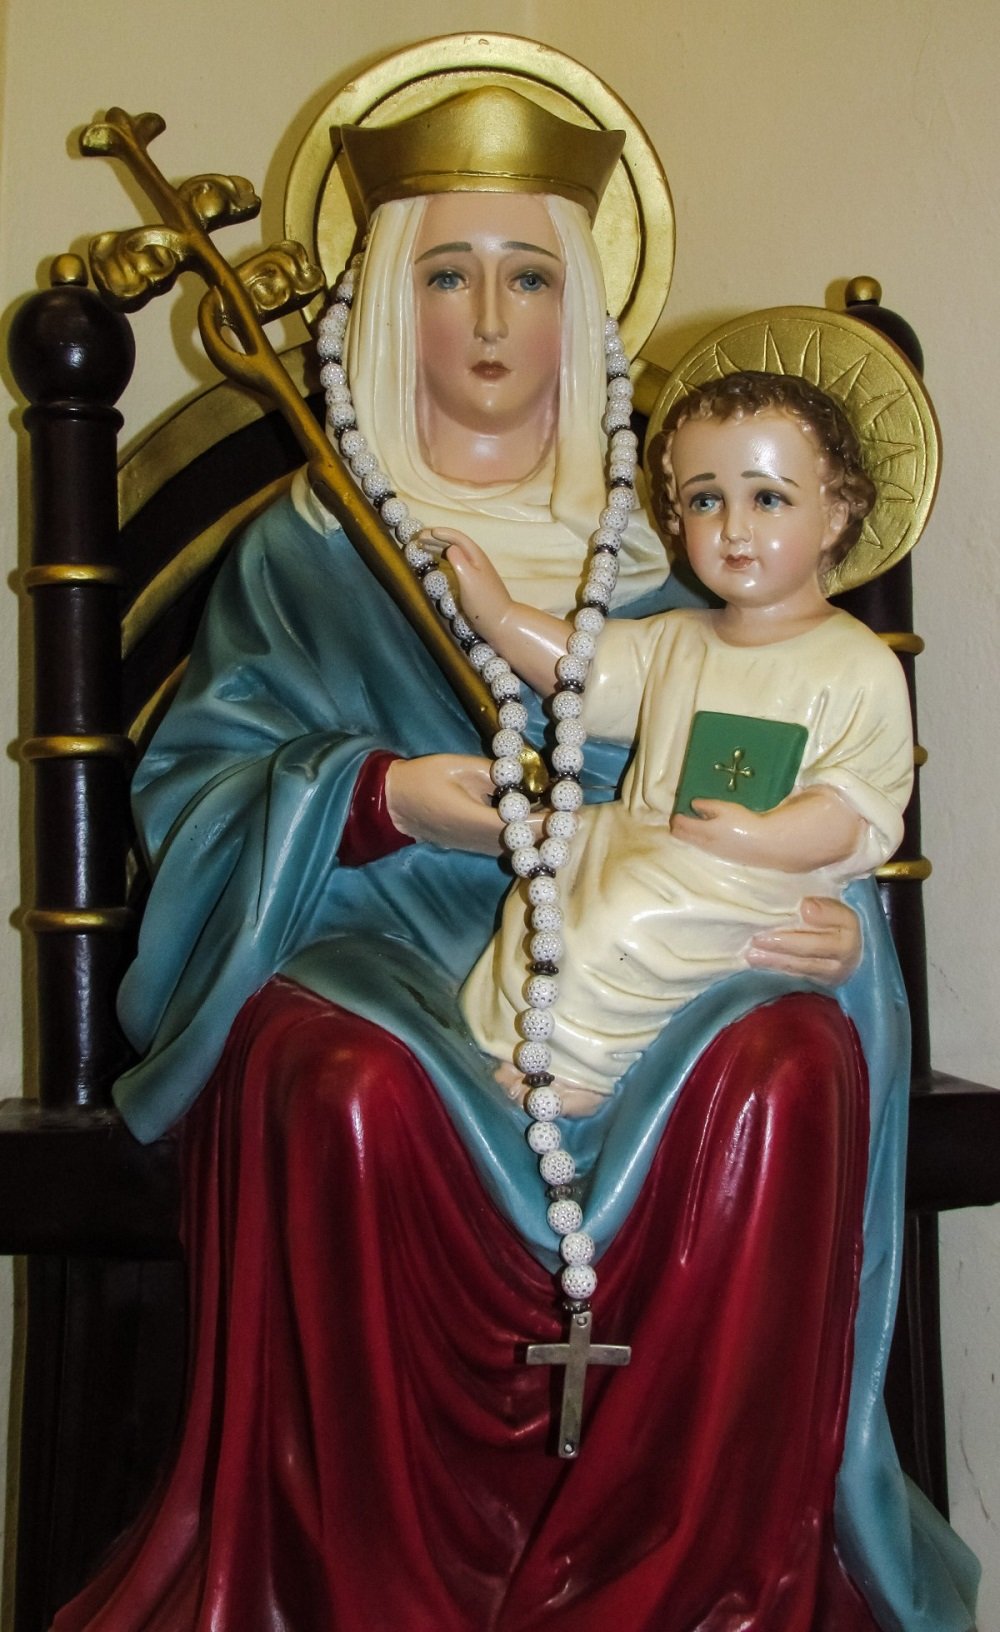 Imagen de la Virgen María y el Niño Jesús.| Imagen: PxHere